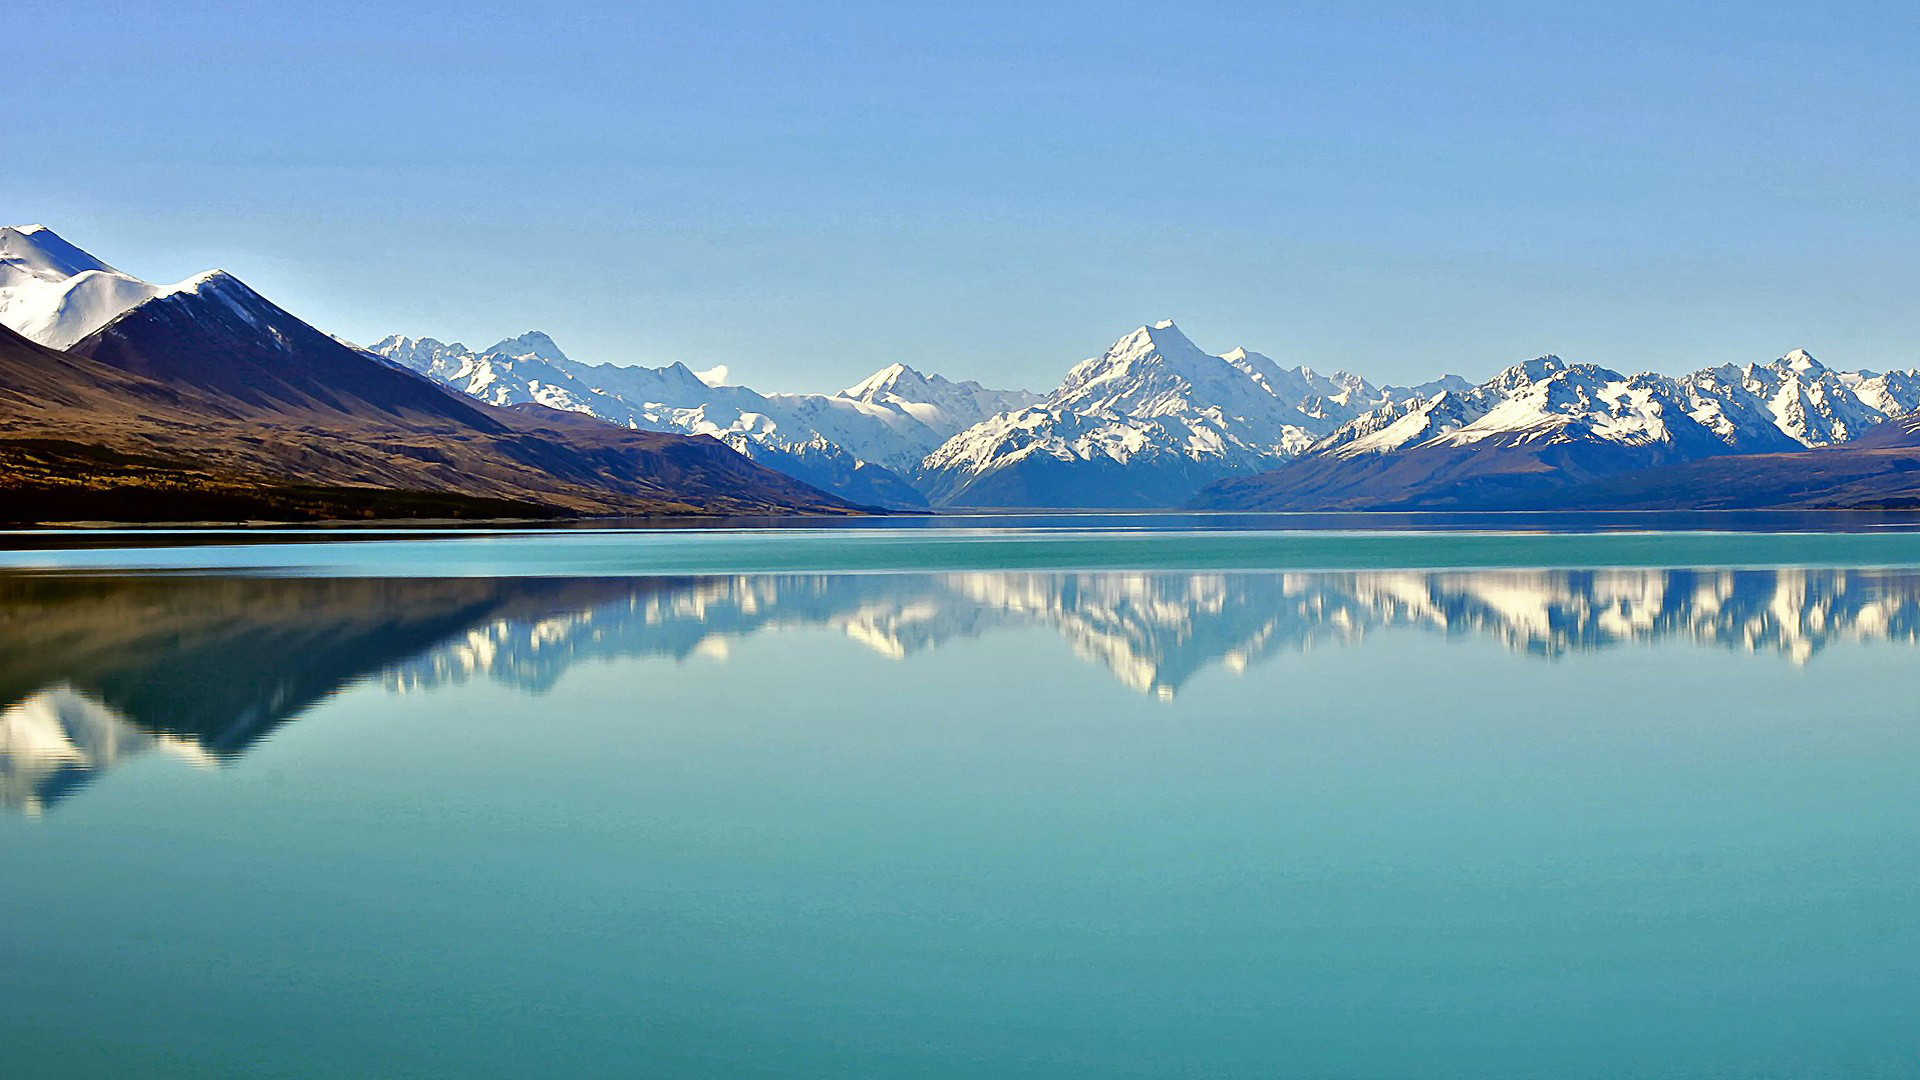 Обои разрешение 1920. Озеро Хавеа новая Зеландия. Кучерлинское озеро Алтай. Ала Куль Киргизия. Море и горы.